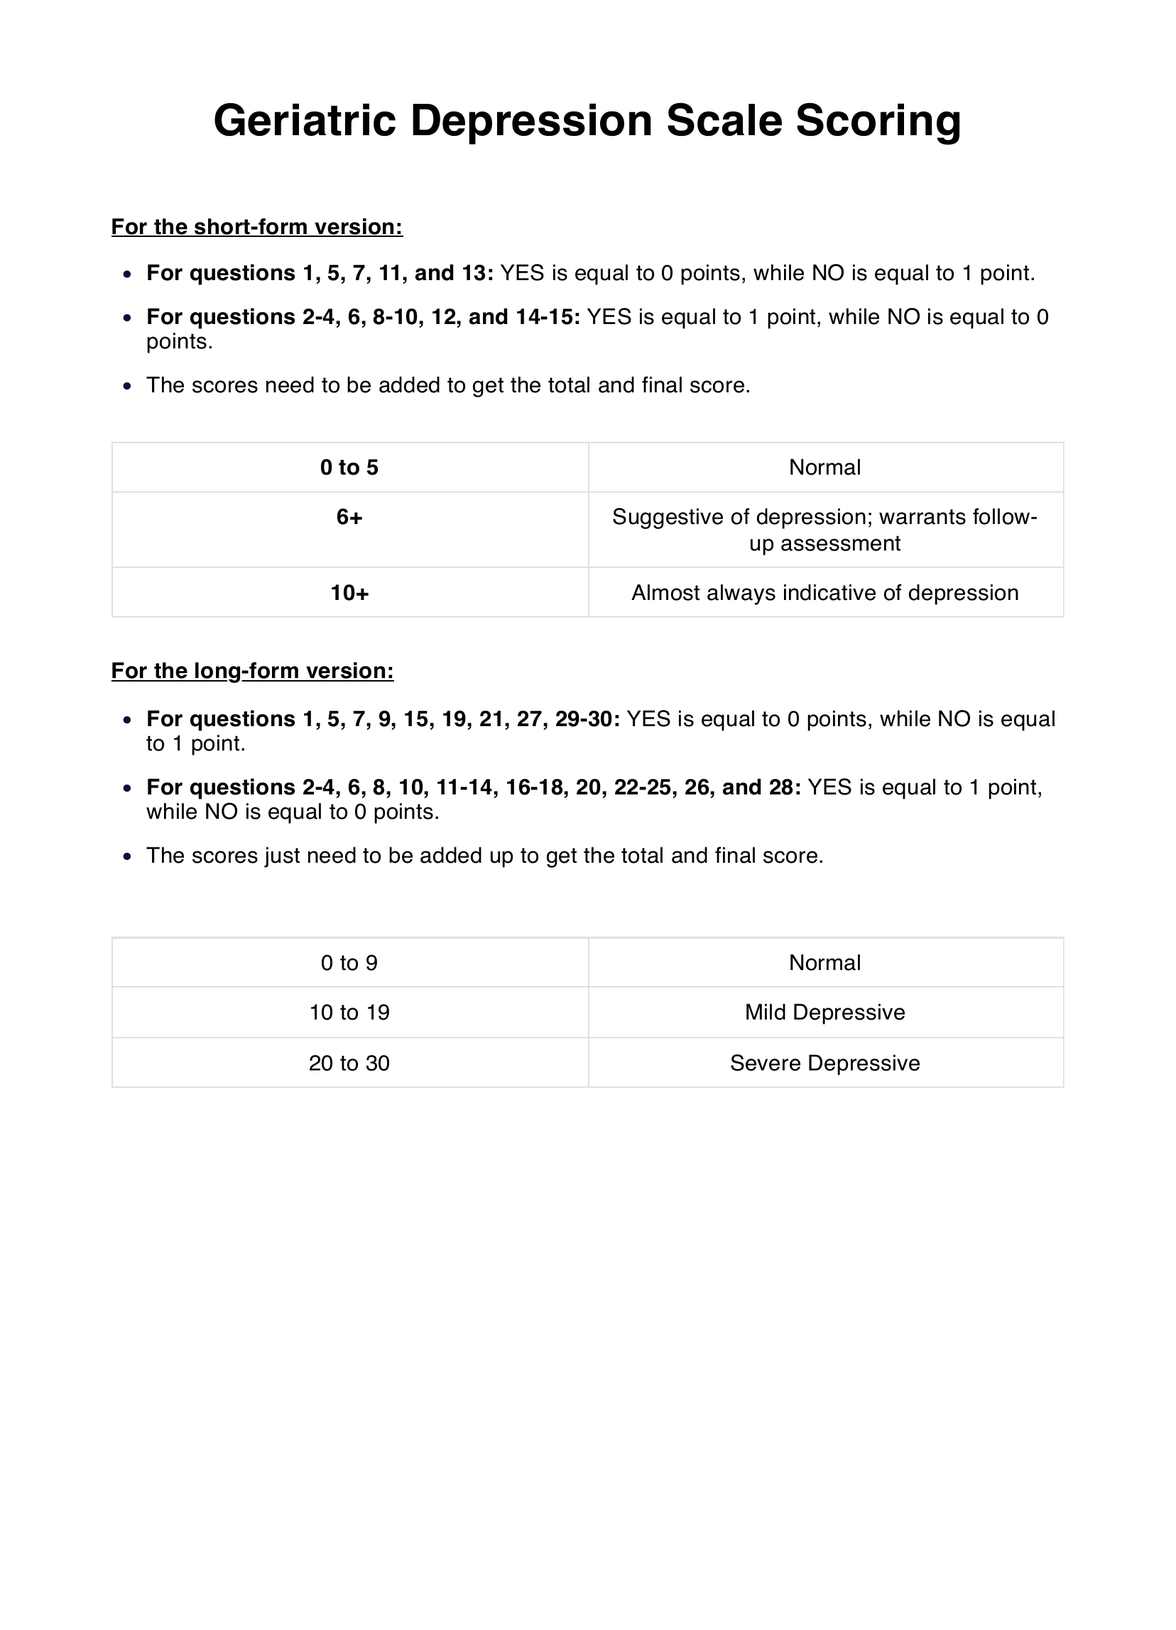 Geriatric Depression Scale Scoring PDF Example